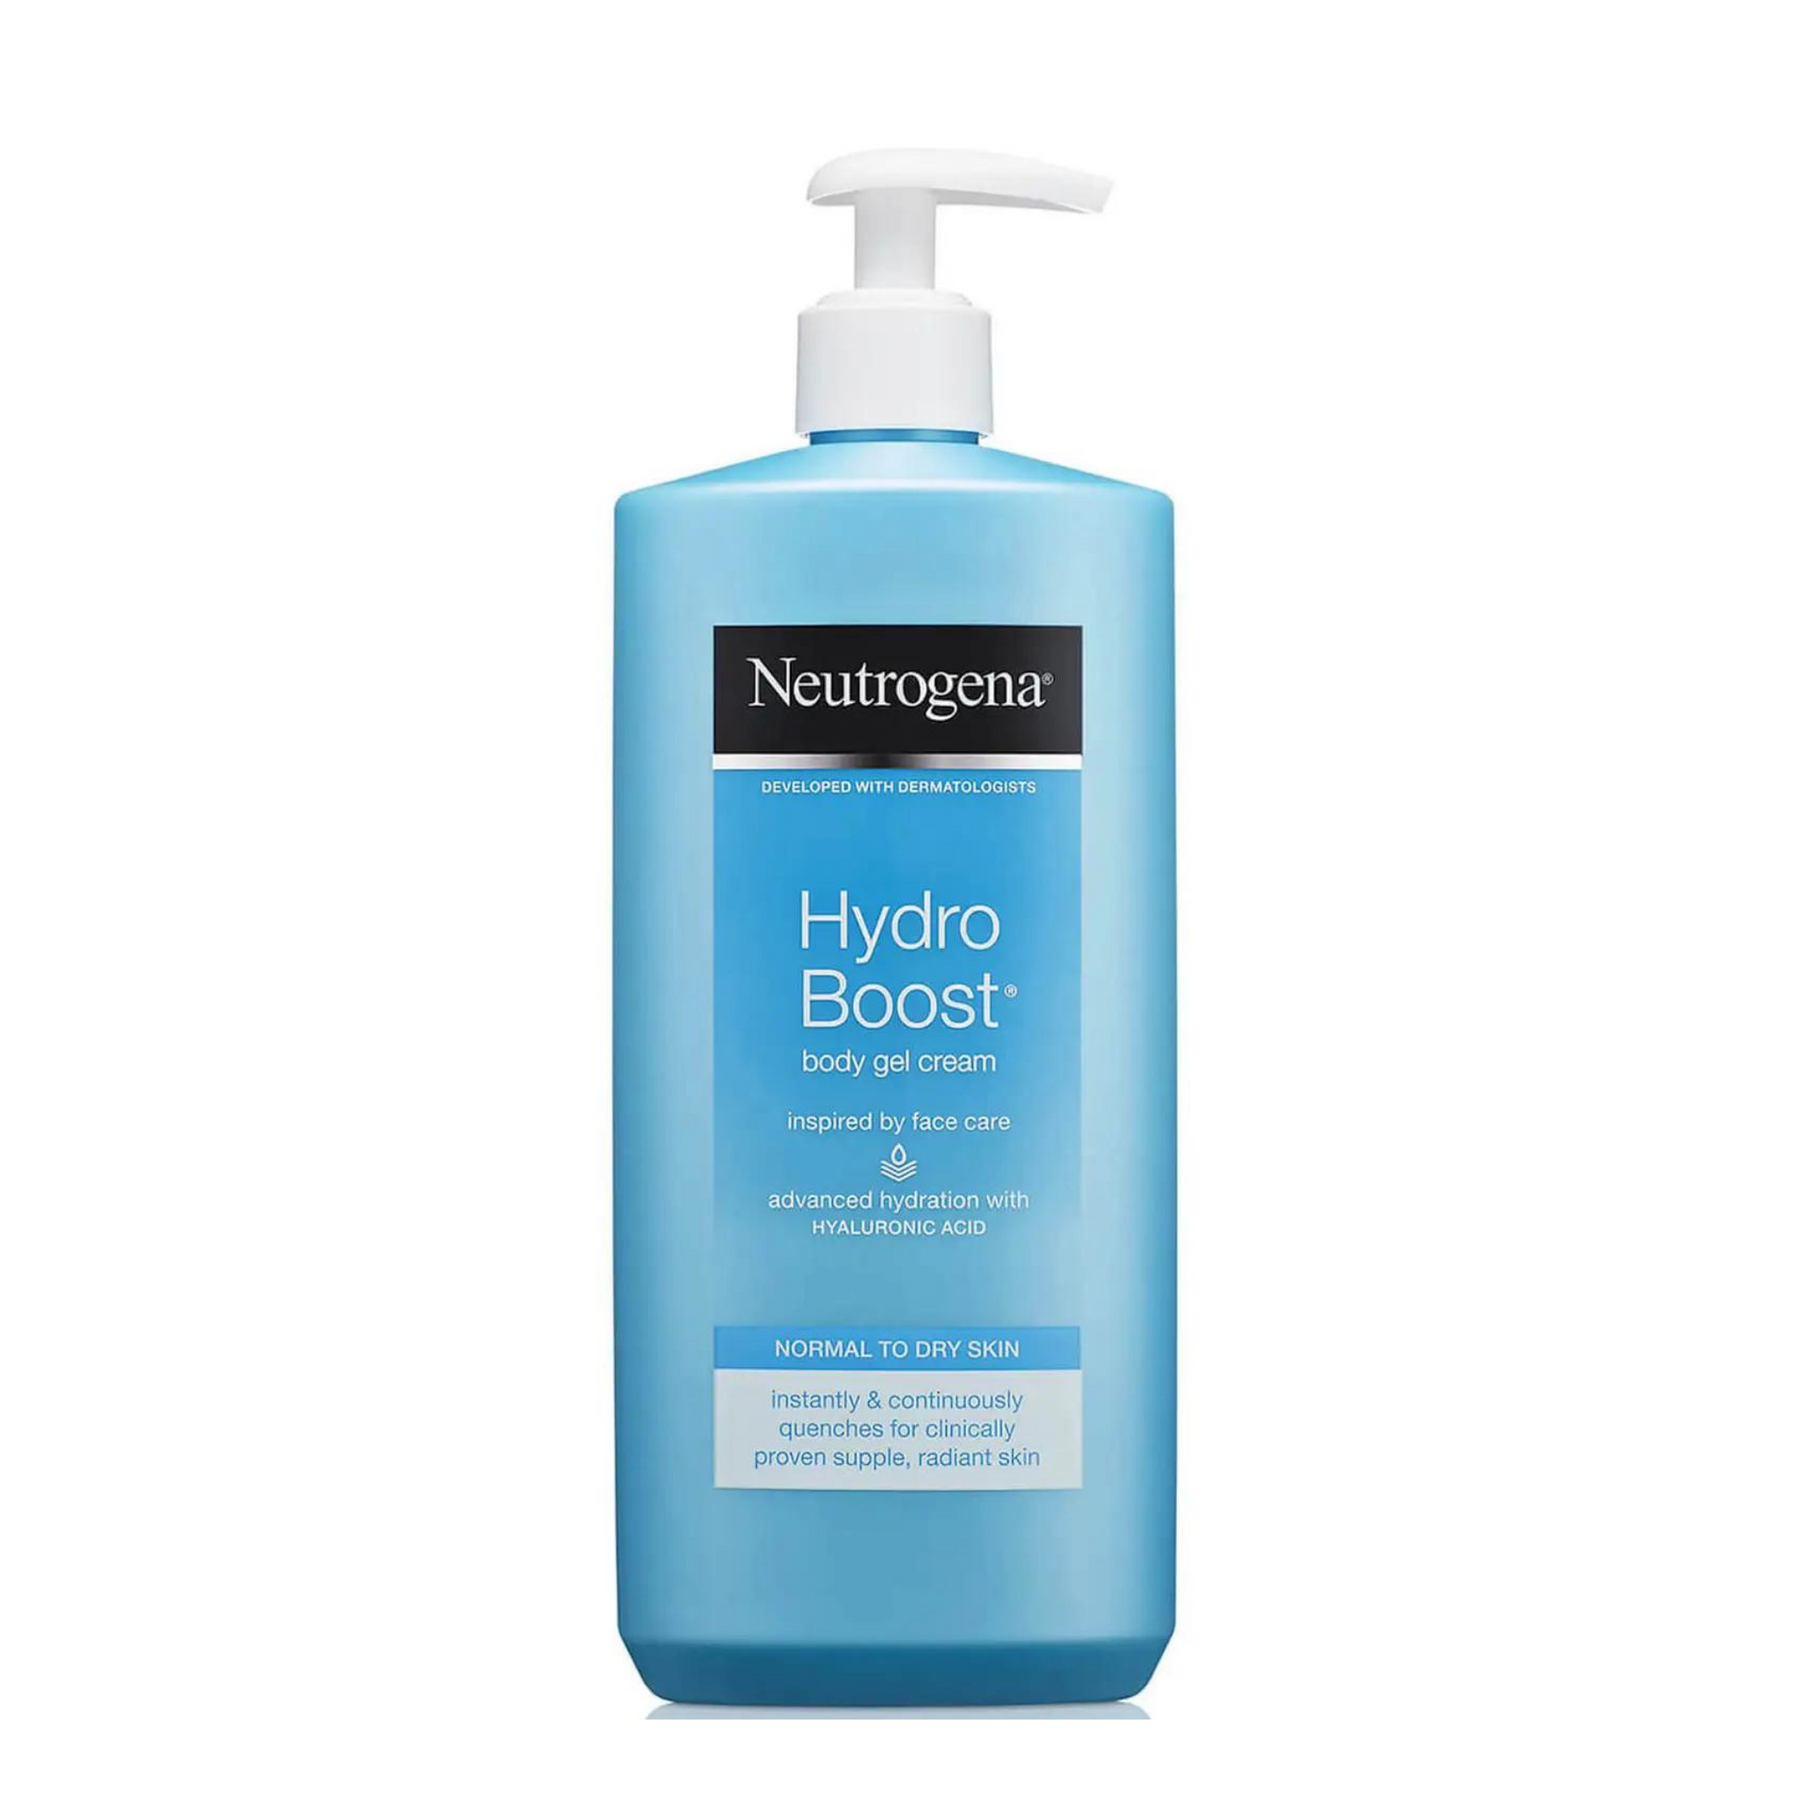 Hydro Boost Body Gel Cream